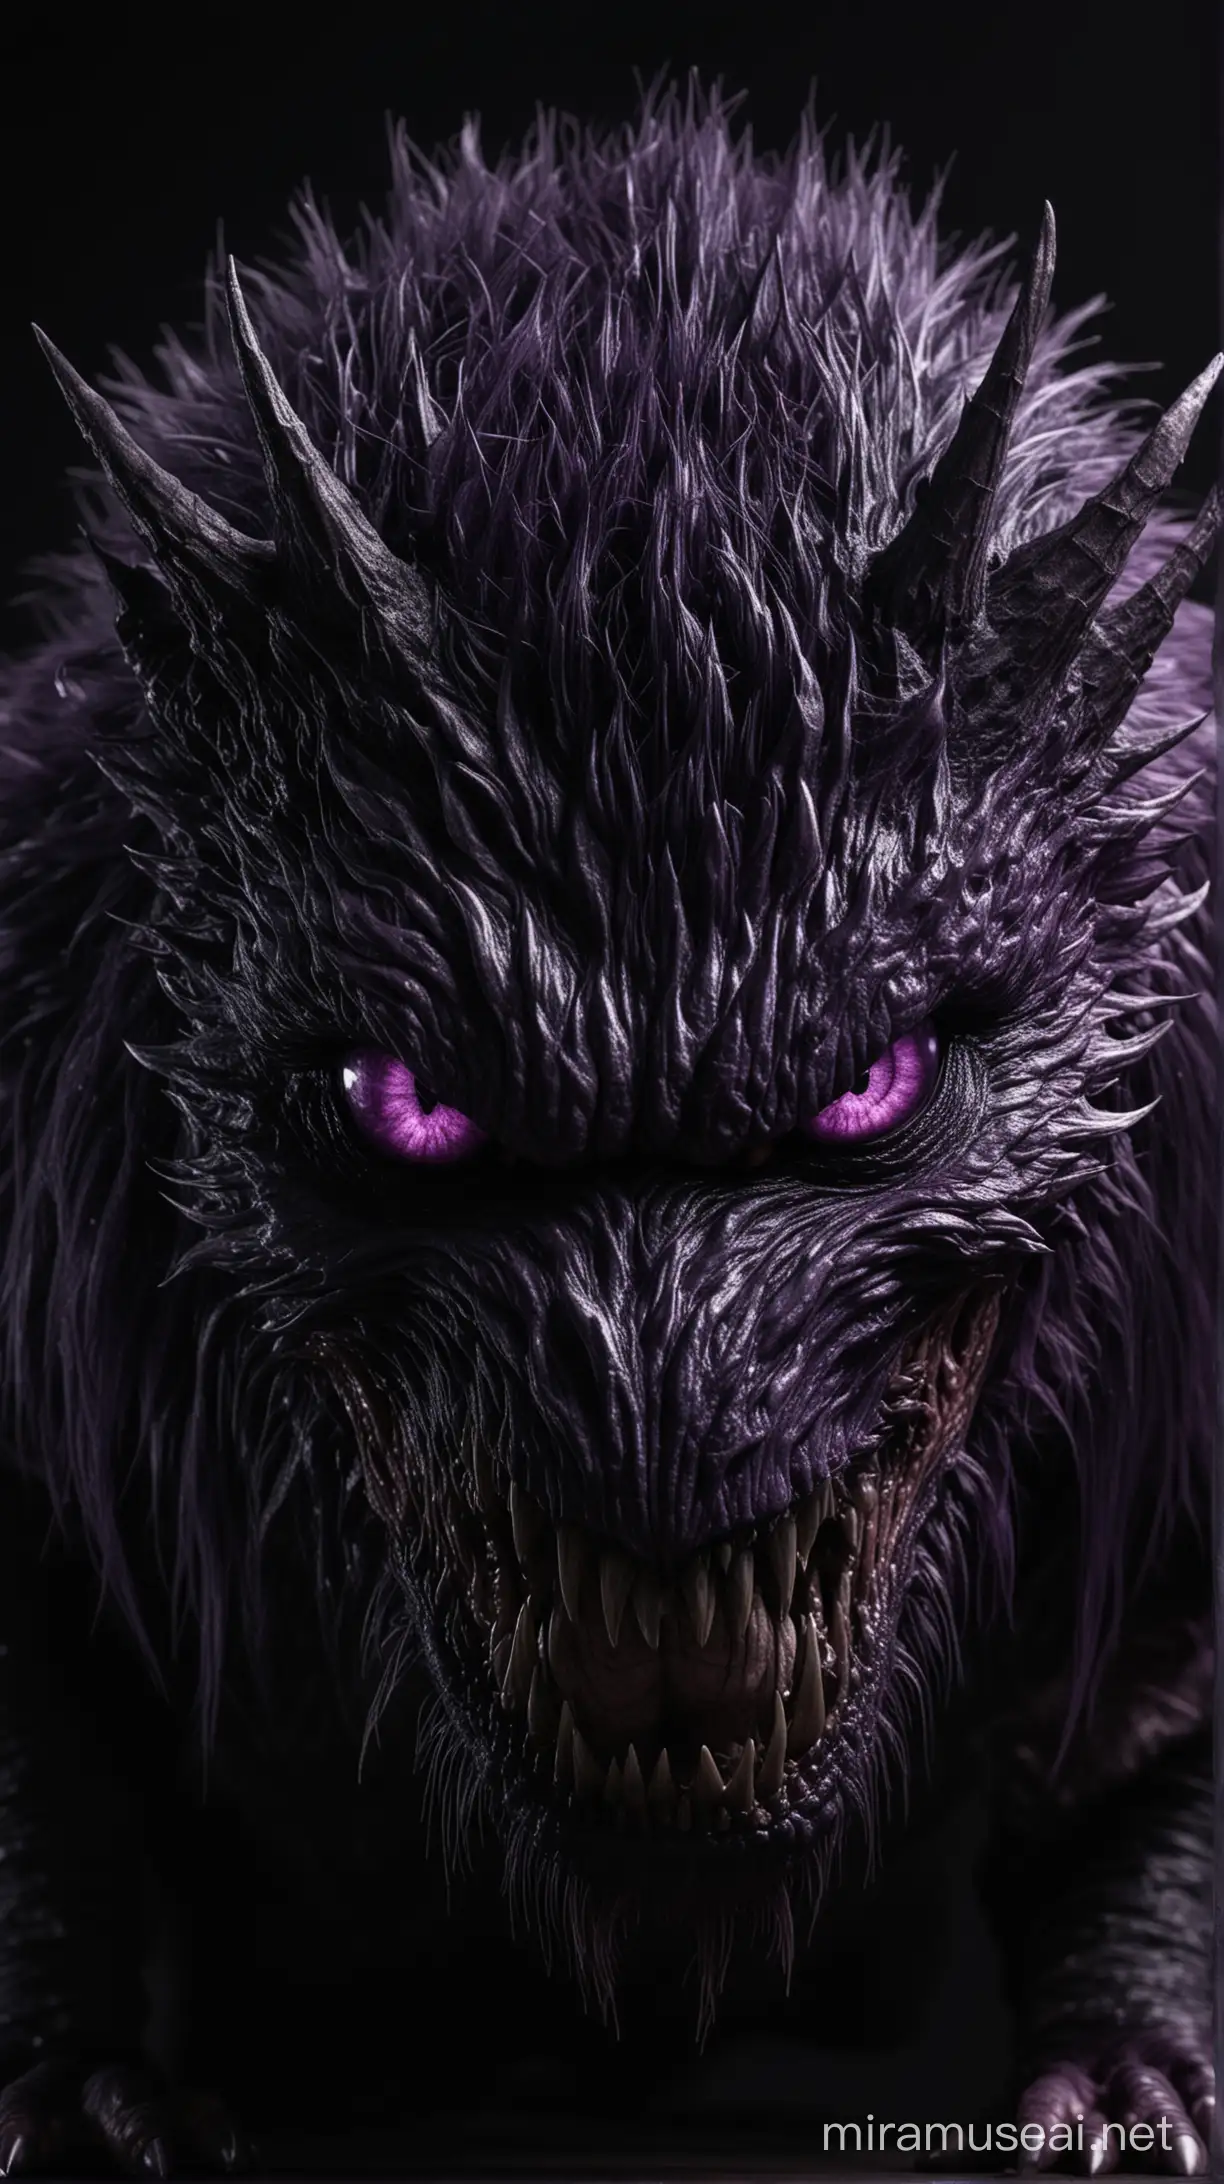 Menacing Predator with Intense Purple Eyes in Eerie Darkness